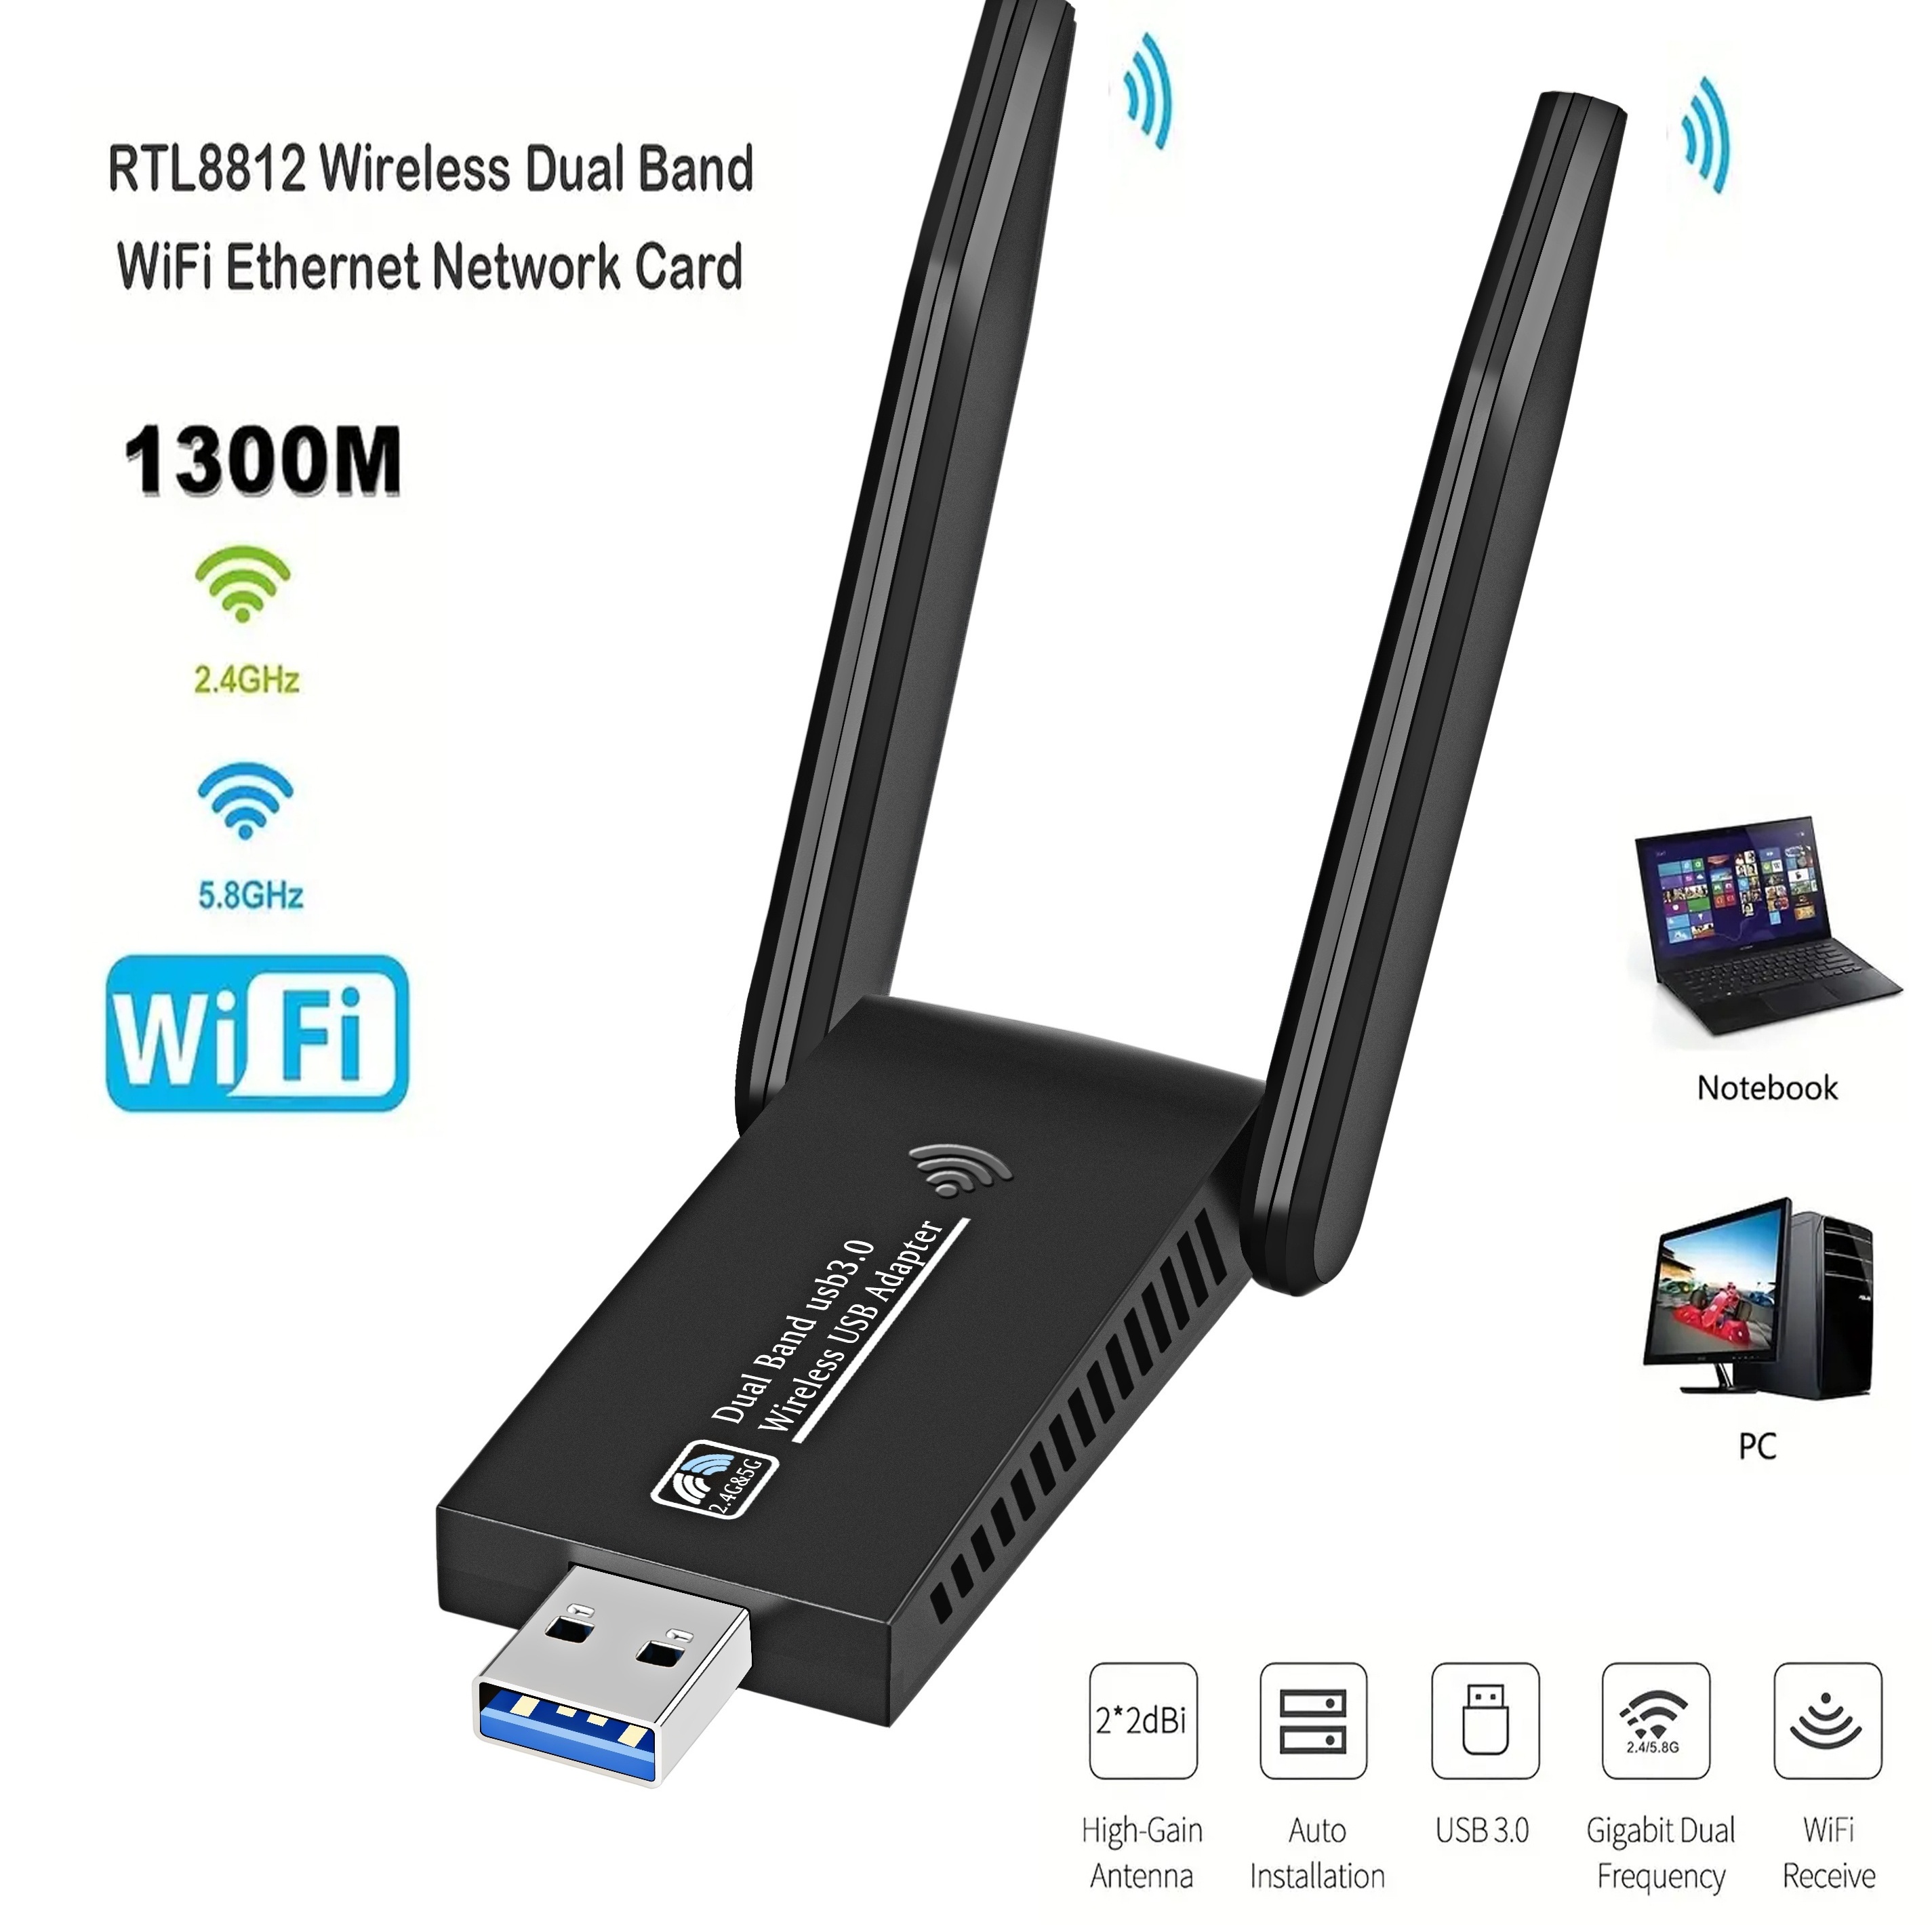  Adaptador USB WiFi Bluetooth, 600 Mbps de banda dual 2.4/5 GHz,  receptor externo de red inalámbrica, mini dongle WiFi para PC/portátil/escritorio  : Electrónica